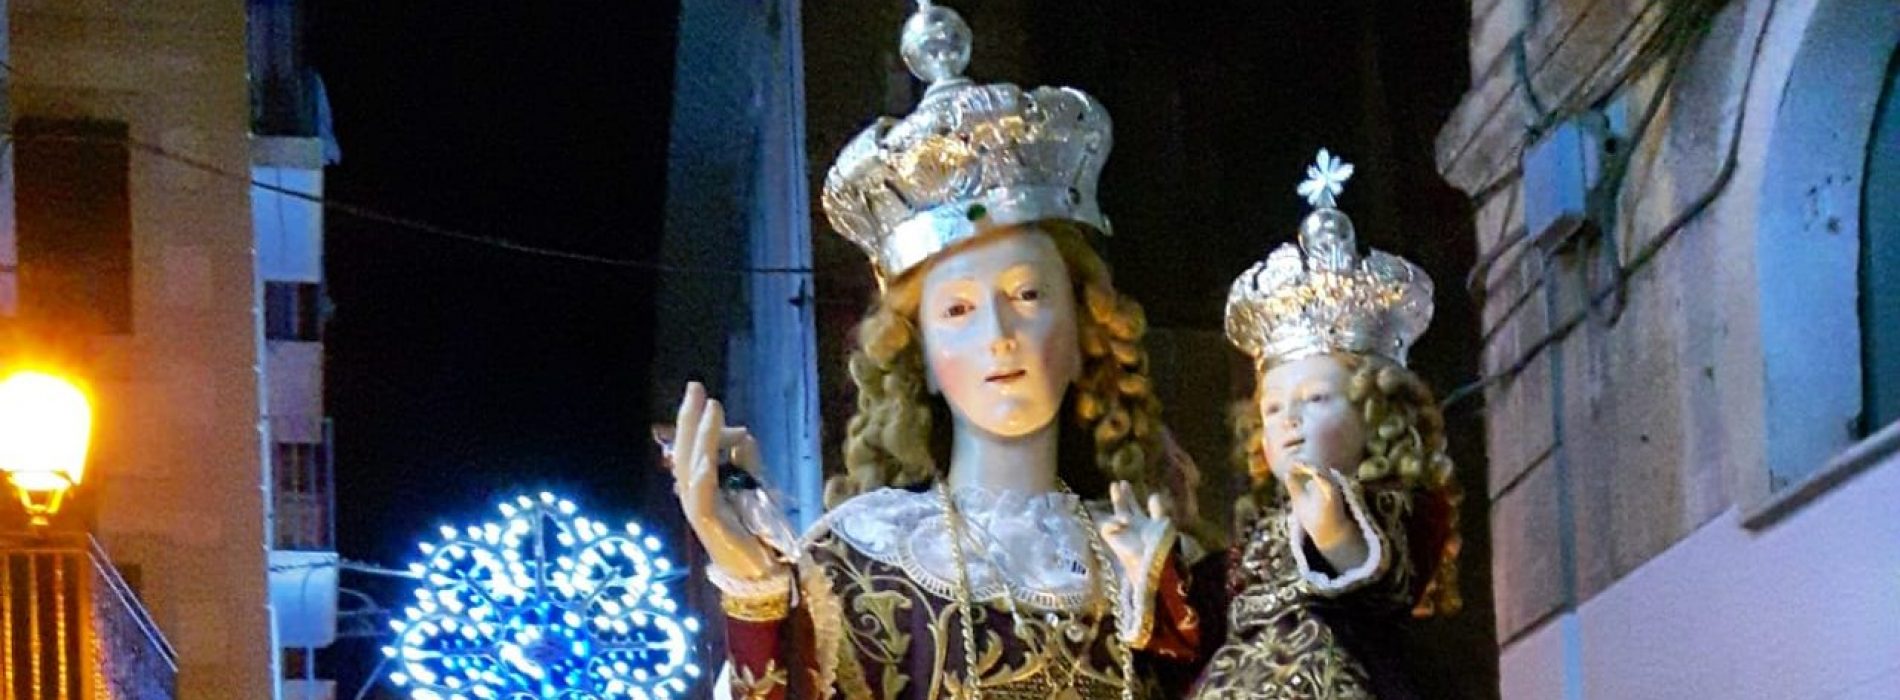 La Madonna del Carmelo, Capua prepara la festa del 16 luglio